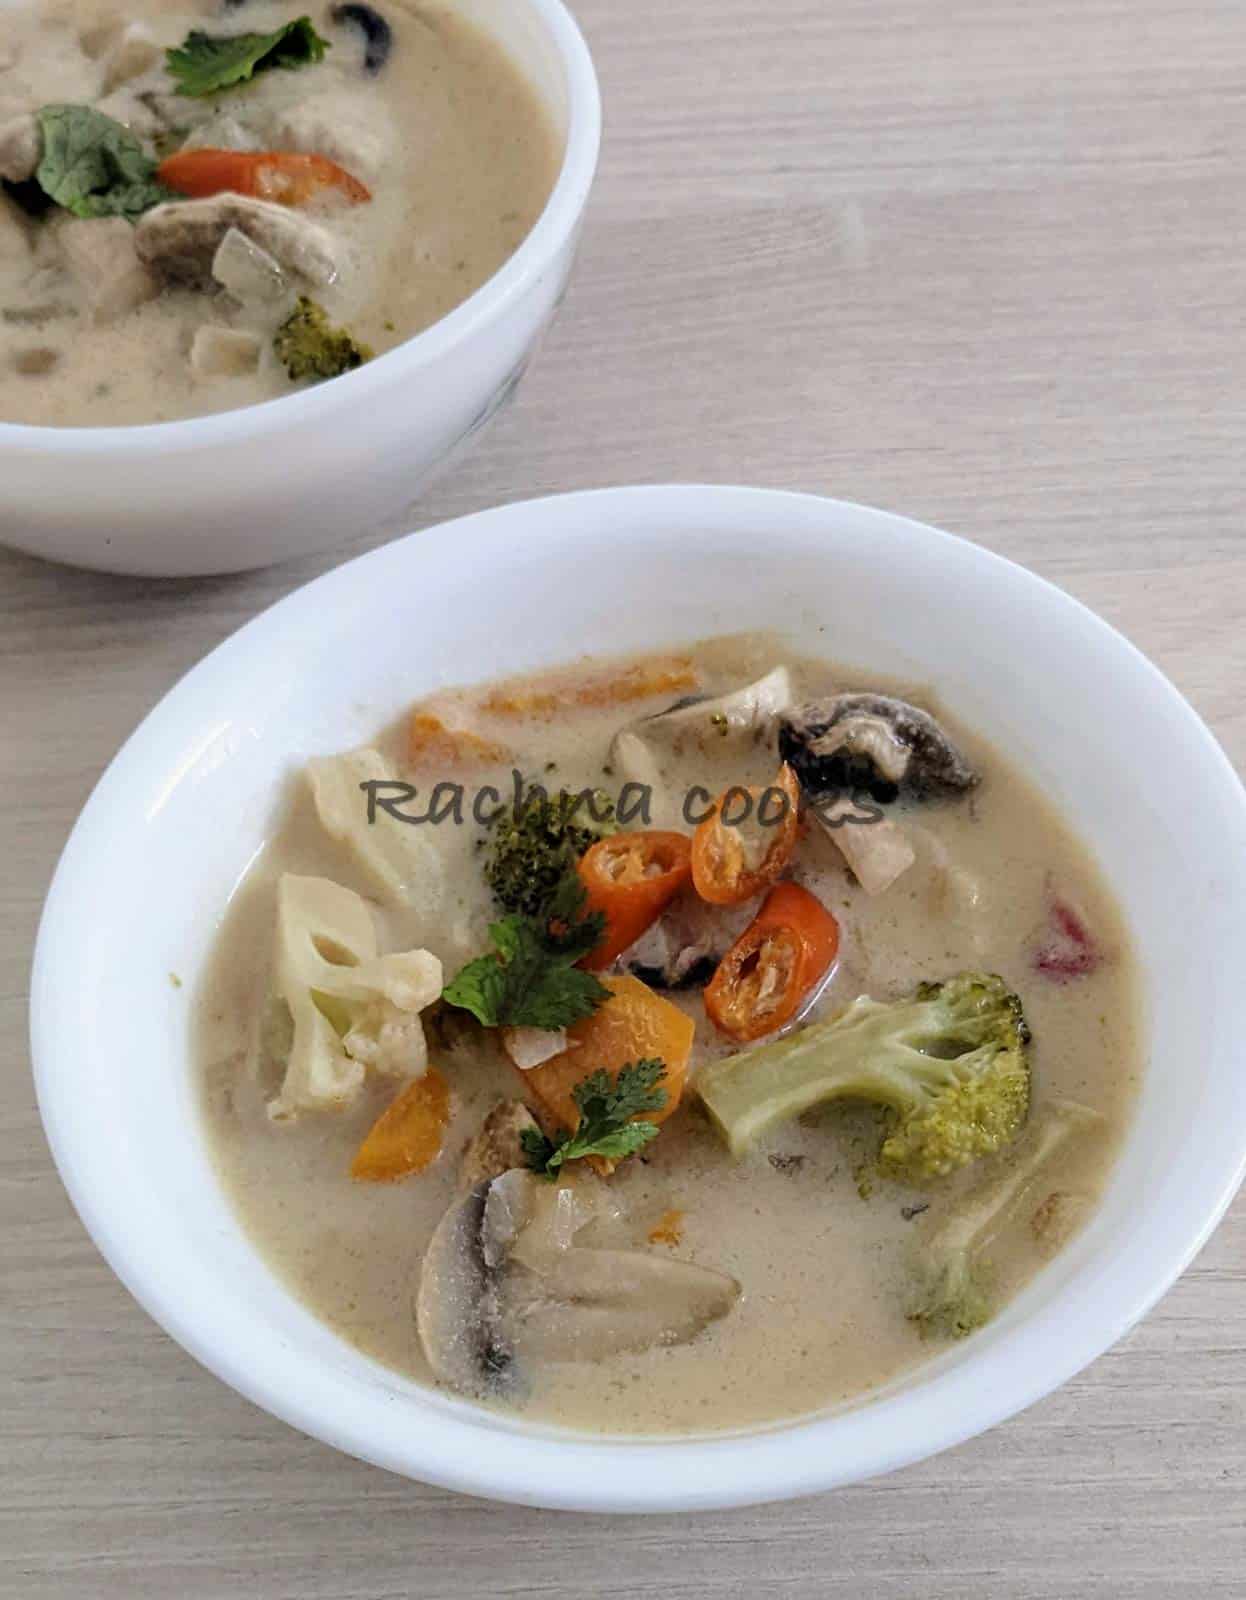 2 bowls of Tom Kha soup